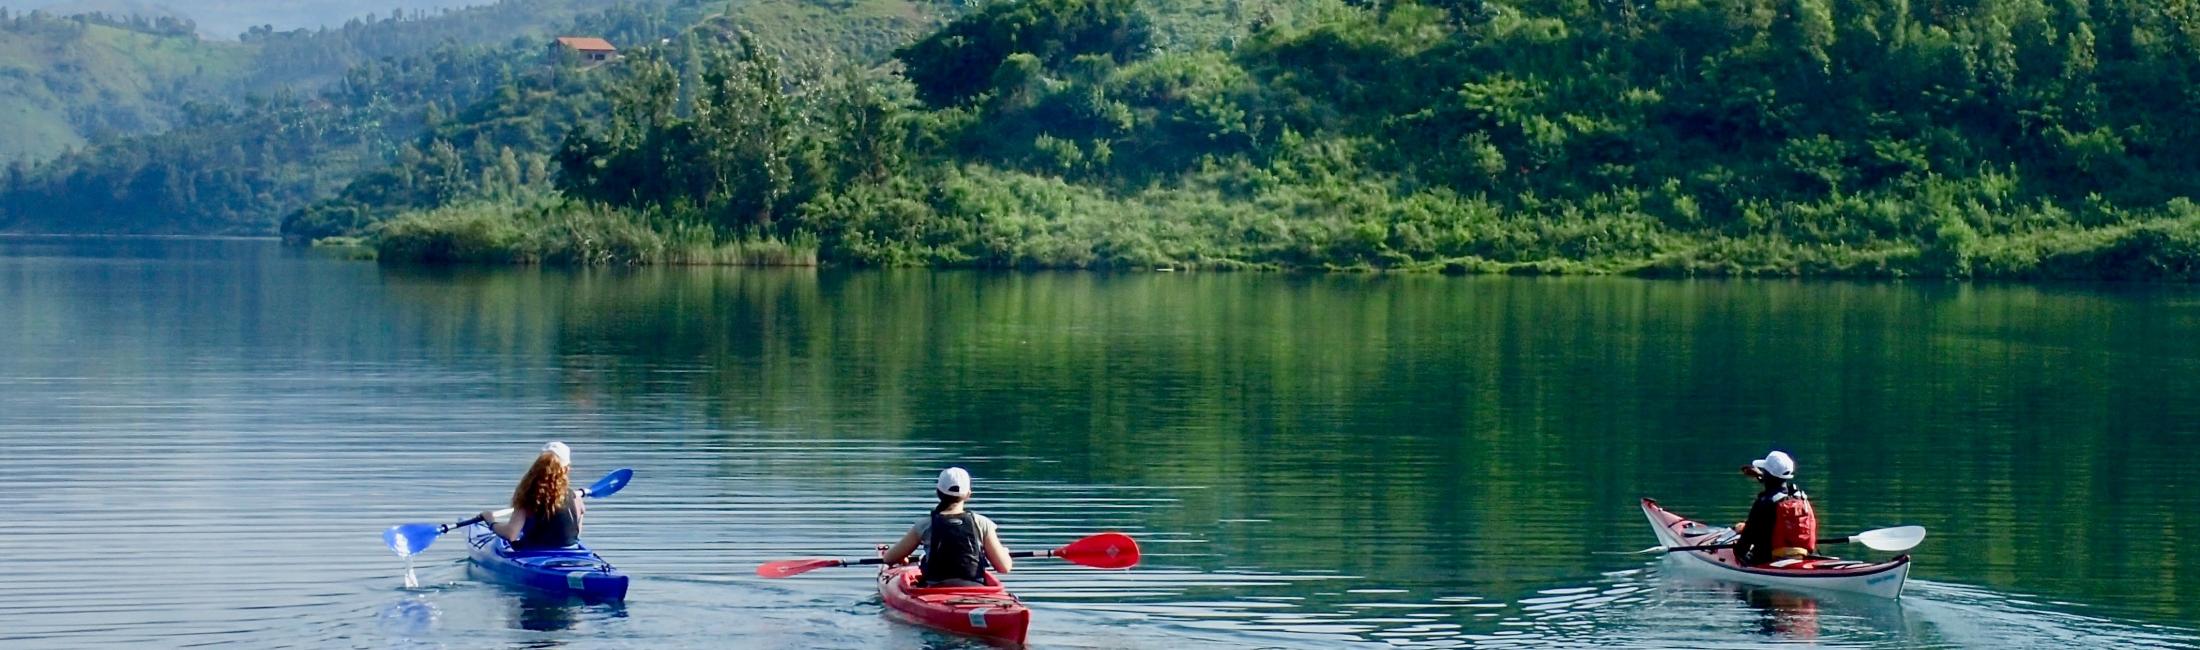 Lake Kivu Kayaking Rwanda